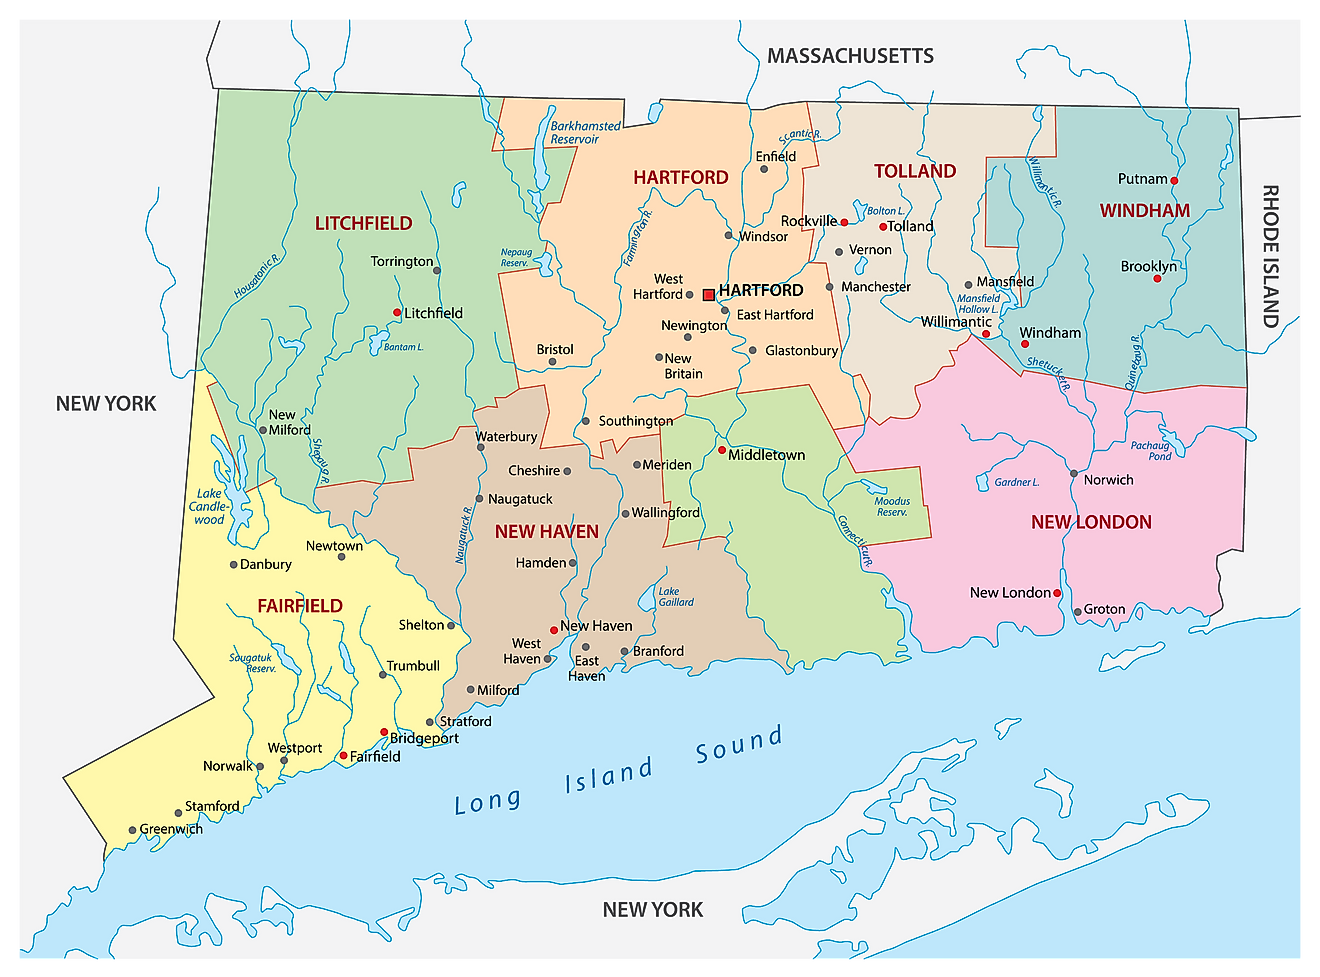 Mapa administrativo de Connecticut que muestra sus 8 condados y la ciudad capital - Hartford